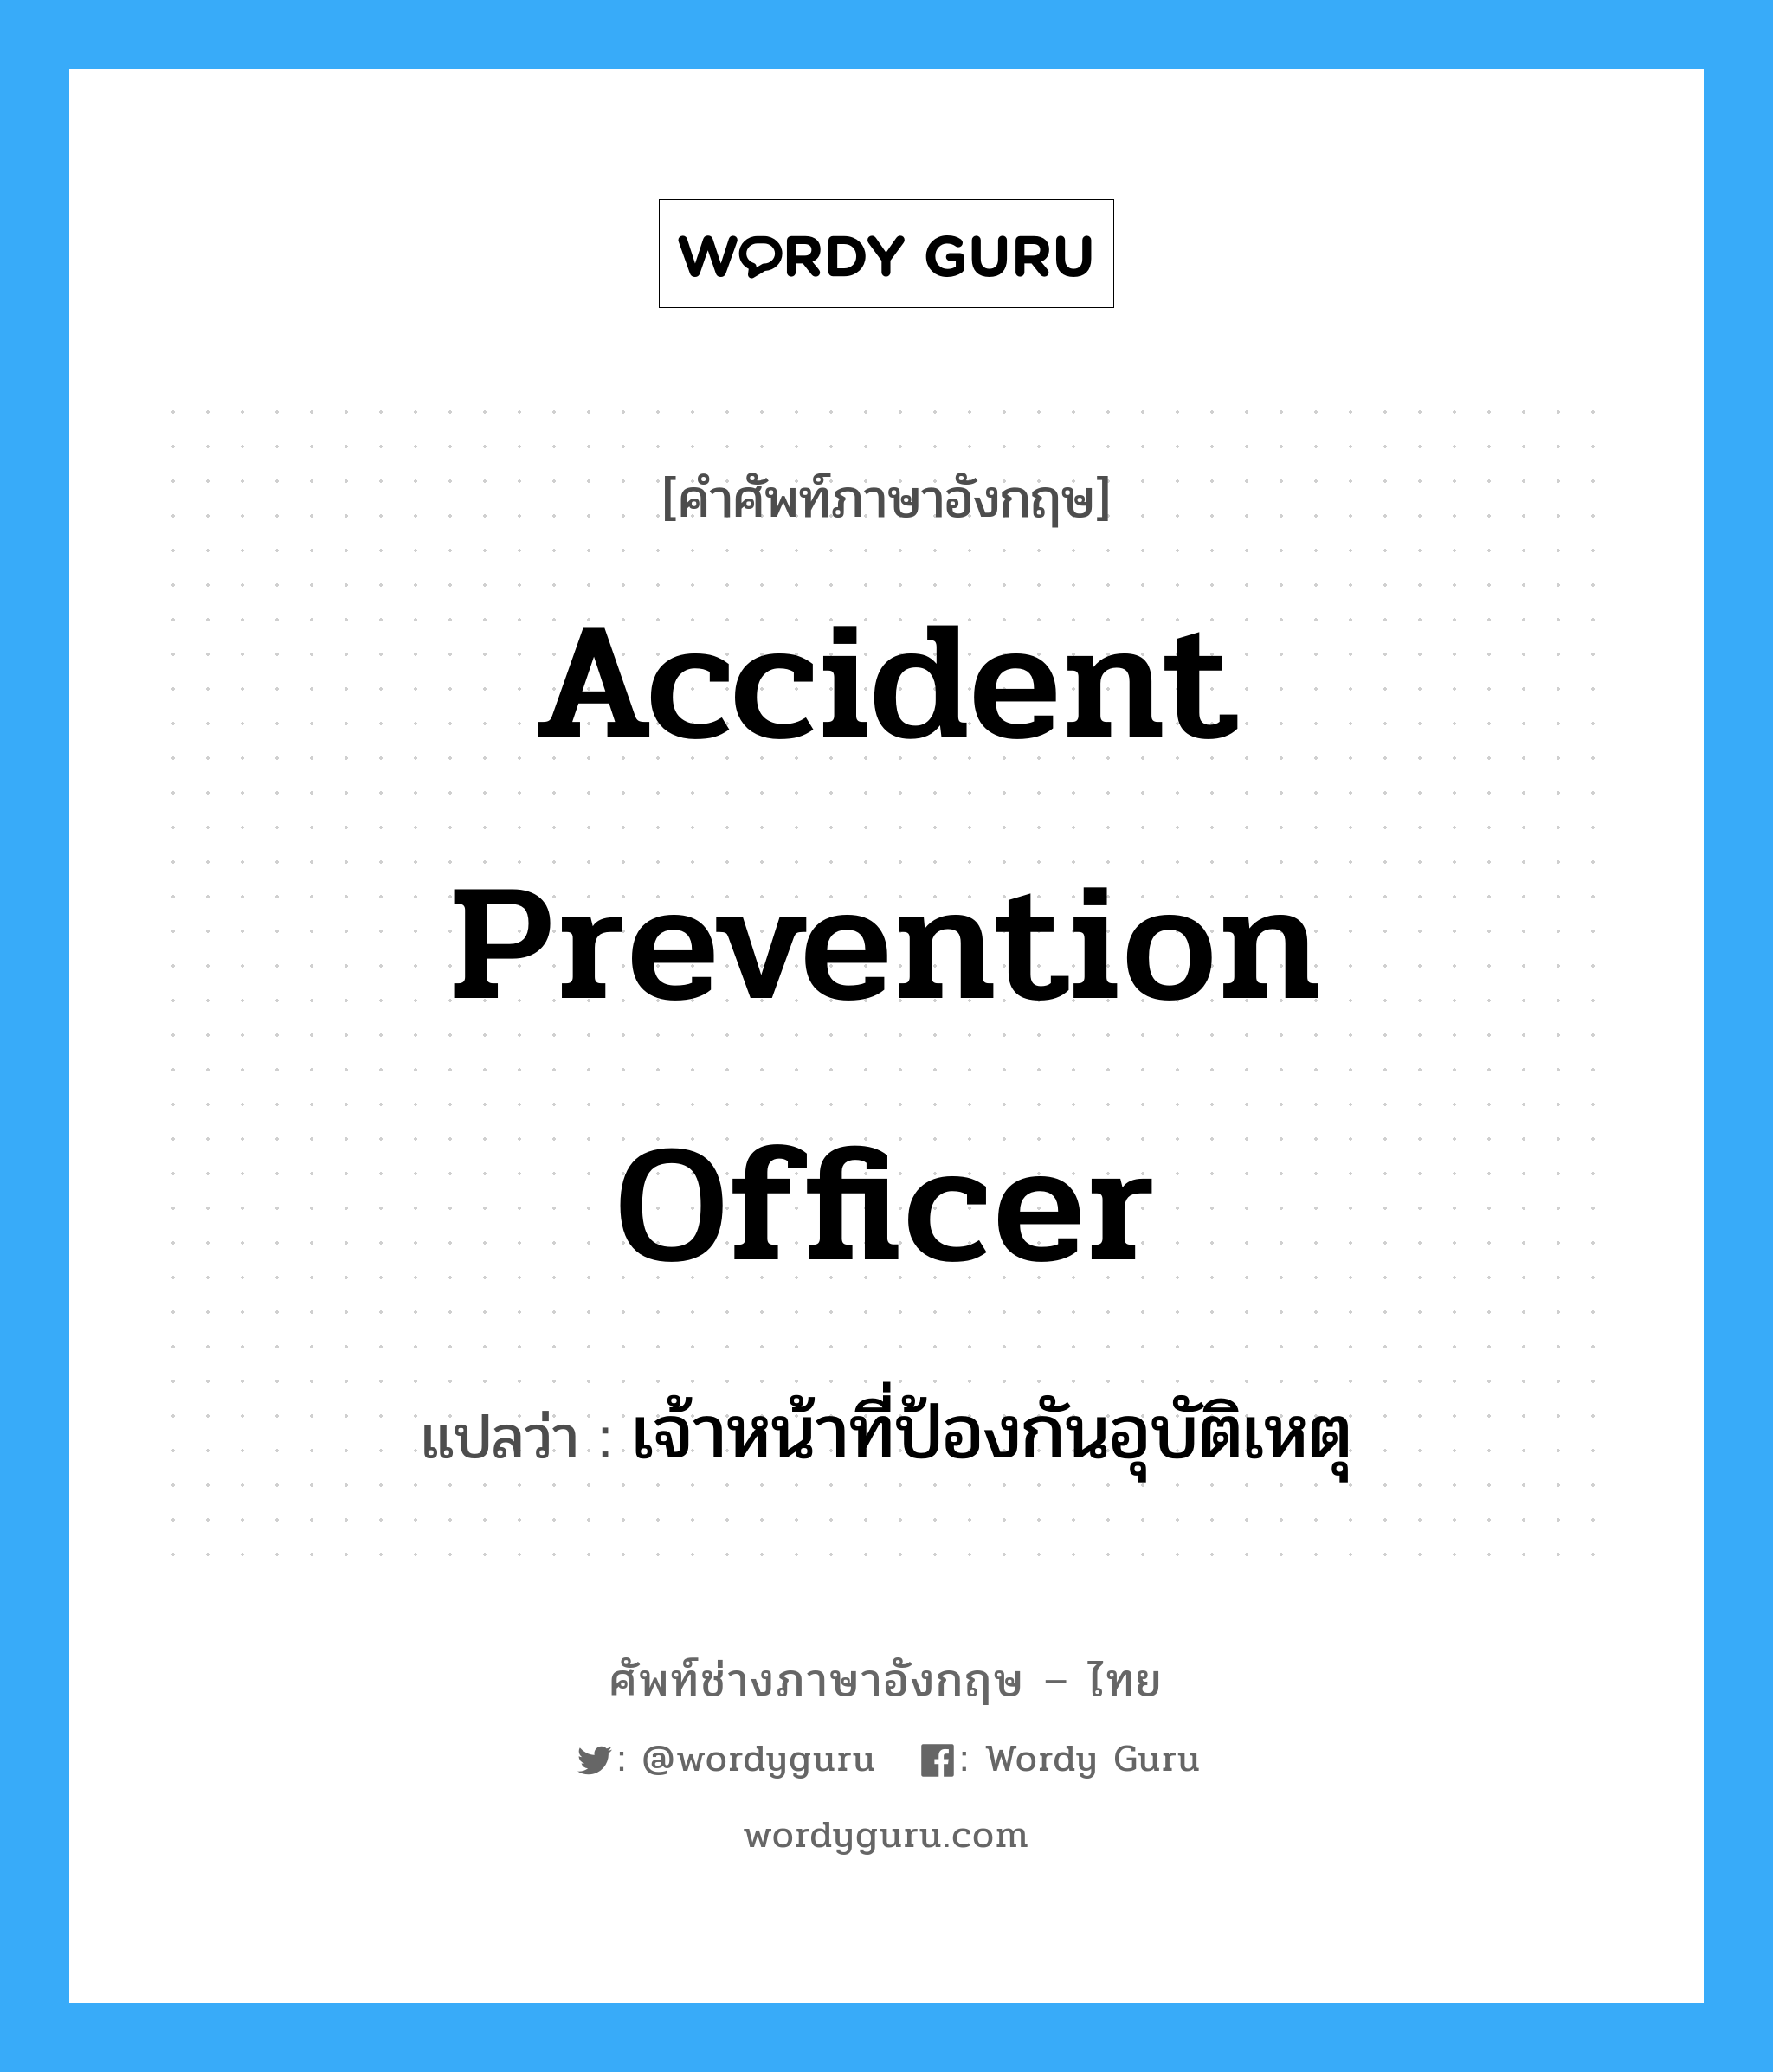 เจ้าหน้าที่ป้องกันอุบัติเหตุ ภาษาอังกฤษ?, คำศัพท์ช่างภาษาอังกฤษ - ไทย เจ้าหน้าที่ป้องกันอุบัติเหตุ คำศัพท์ภาษาอังกฤษ เจ้าหน้าที่ป้องกันอุบัติเหตุ แปลว่า Accident Prevention Officer